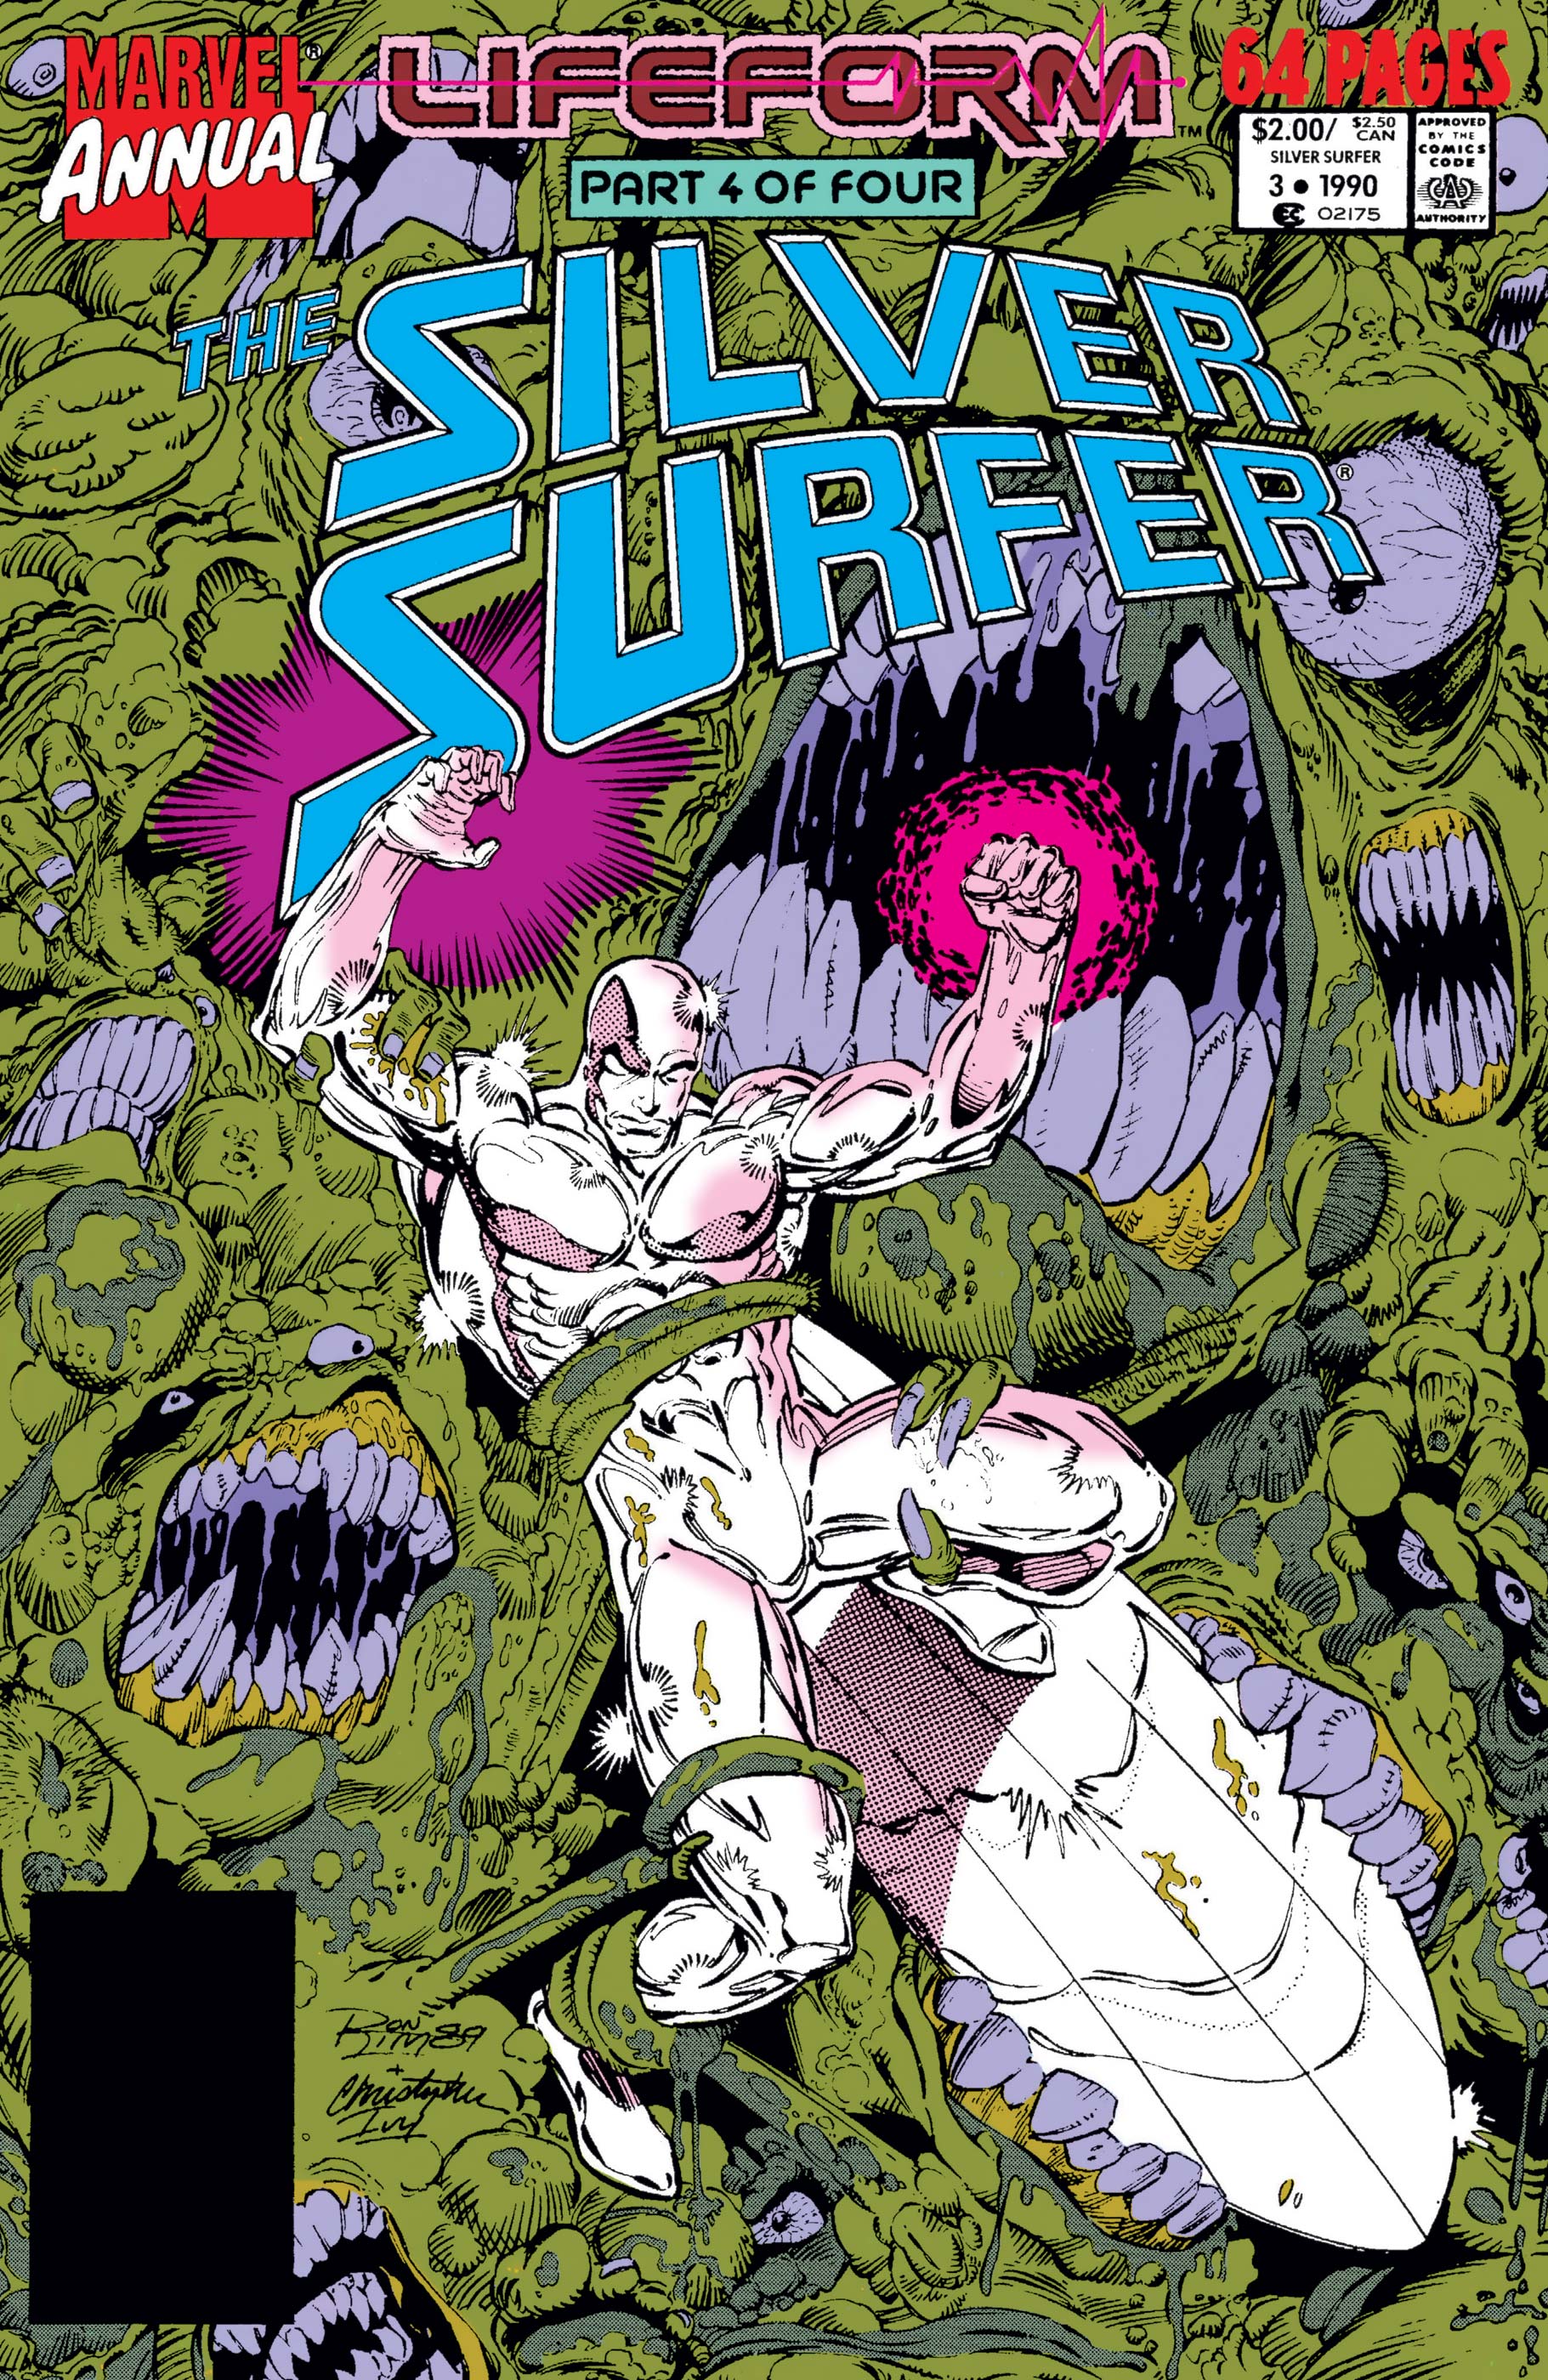 Silver Surfer Annual (1988) #3